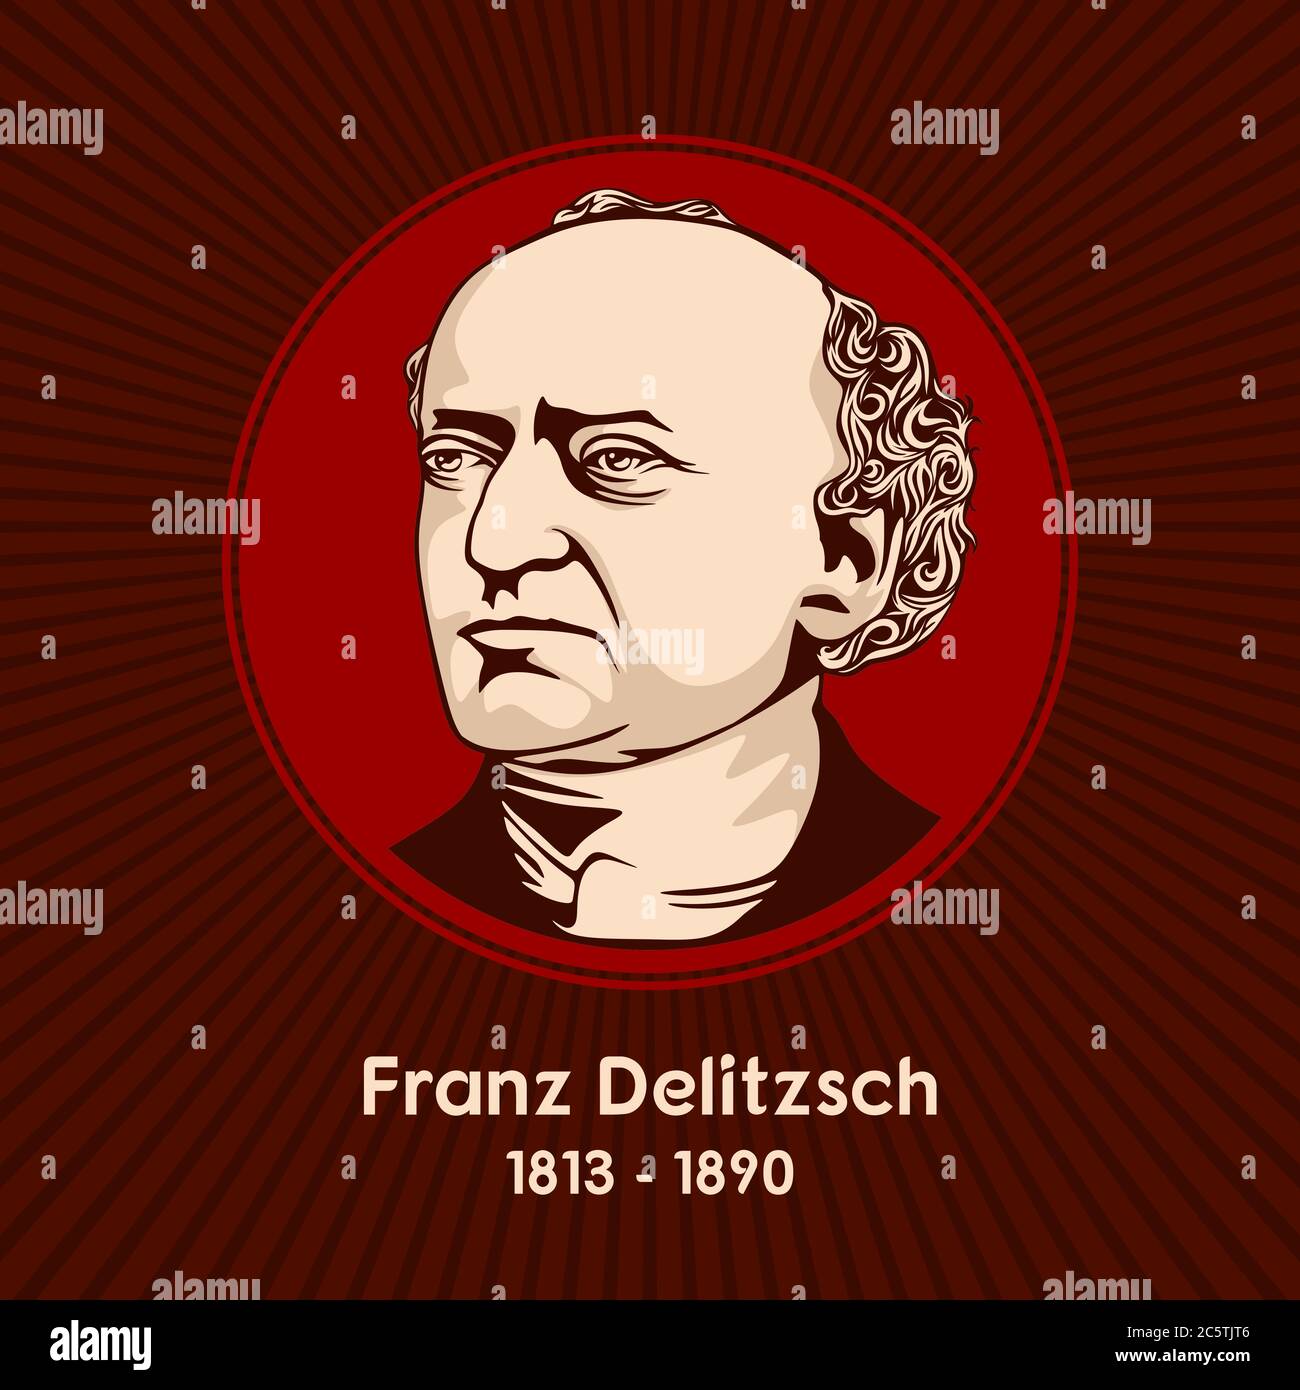 Franz Delitzsch (1813 - 1890) war ein deutscher lutherischer Theologe und Hebraist. Stock Vektor